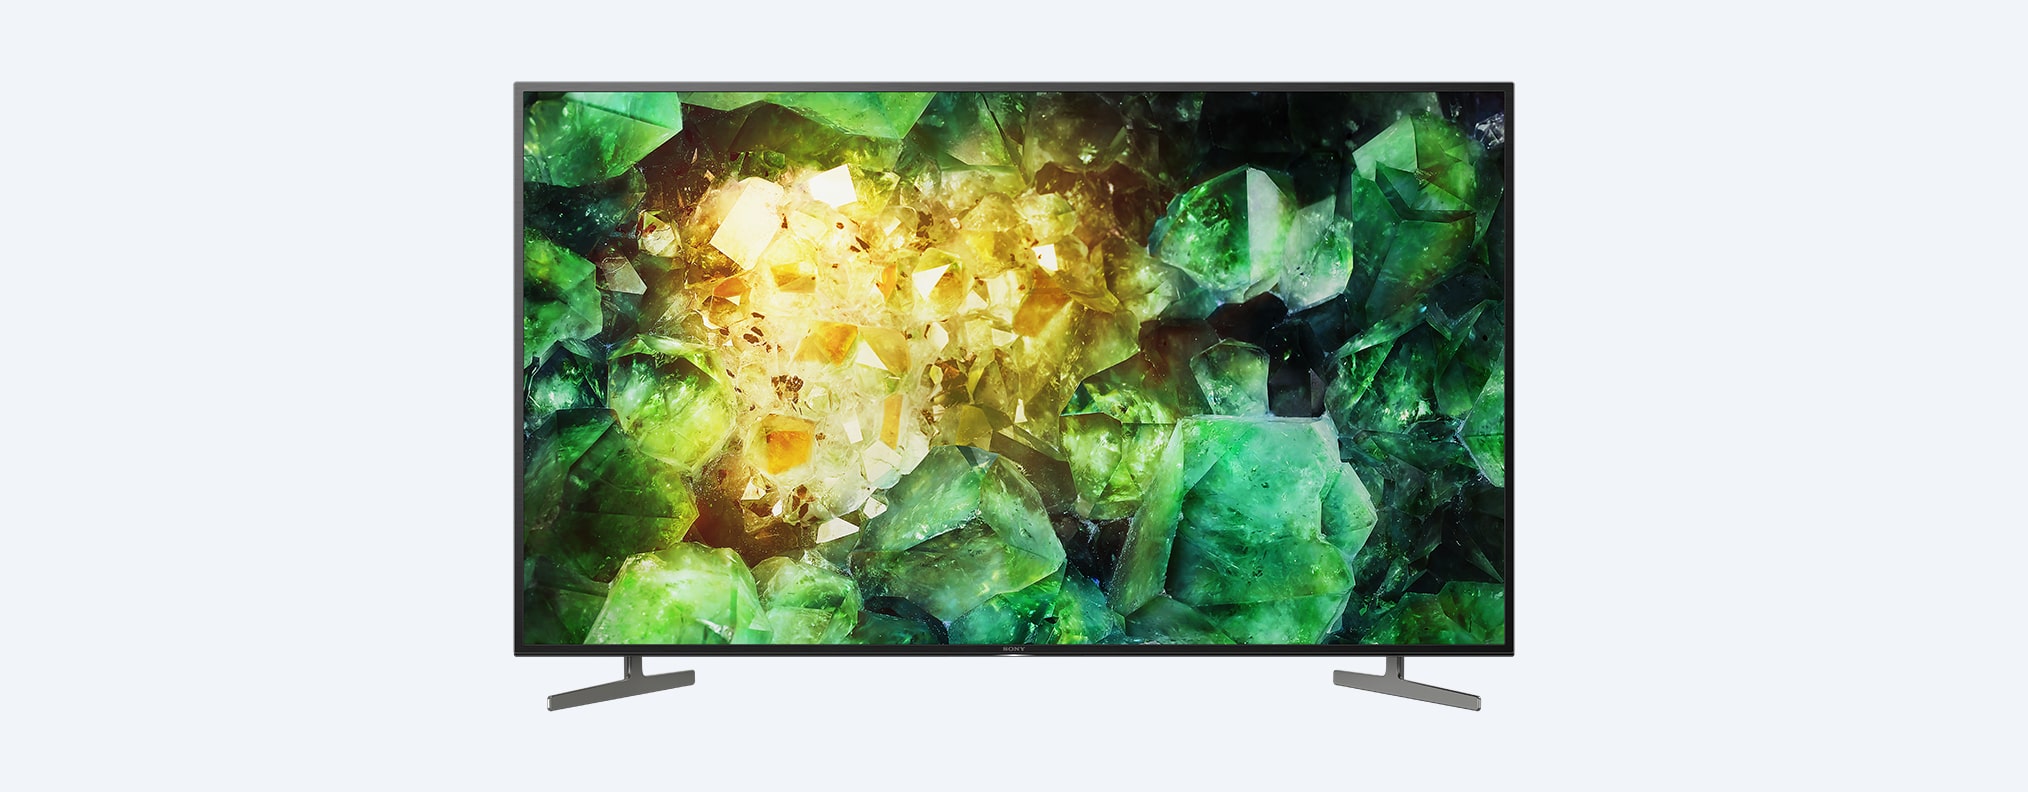 XH81 | 4K Ultra HD | טווח דינמי גבוה (HDR) | טלוויזיה חכמה (Android TV)